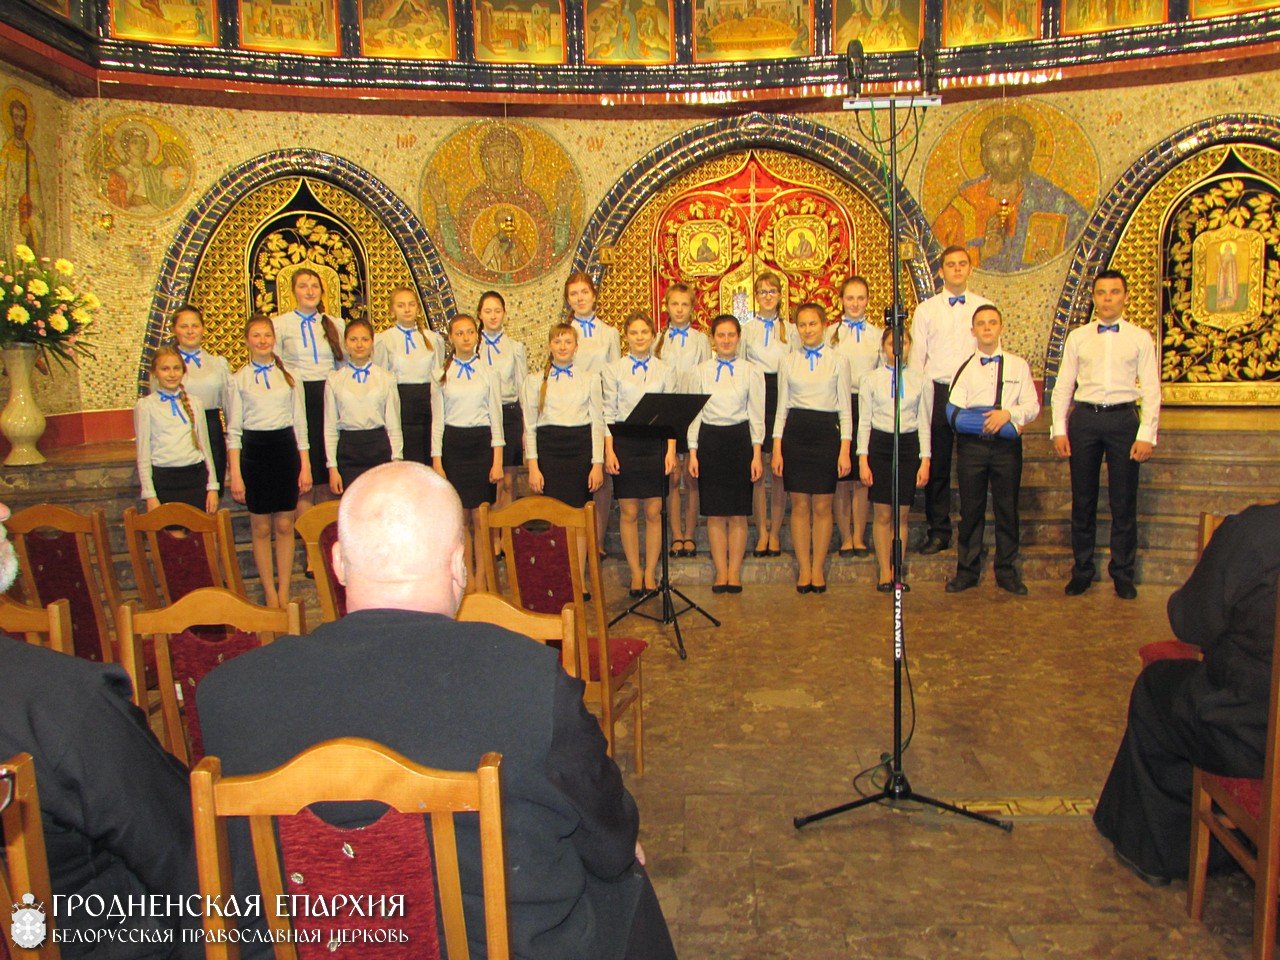 Детский хор храма святителя Николая г.п. Берестовица стал лауреатом  1-й степени в категории «Иные хоры» фестиваля «Хайнувские дни церковной музыки»